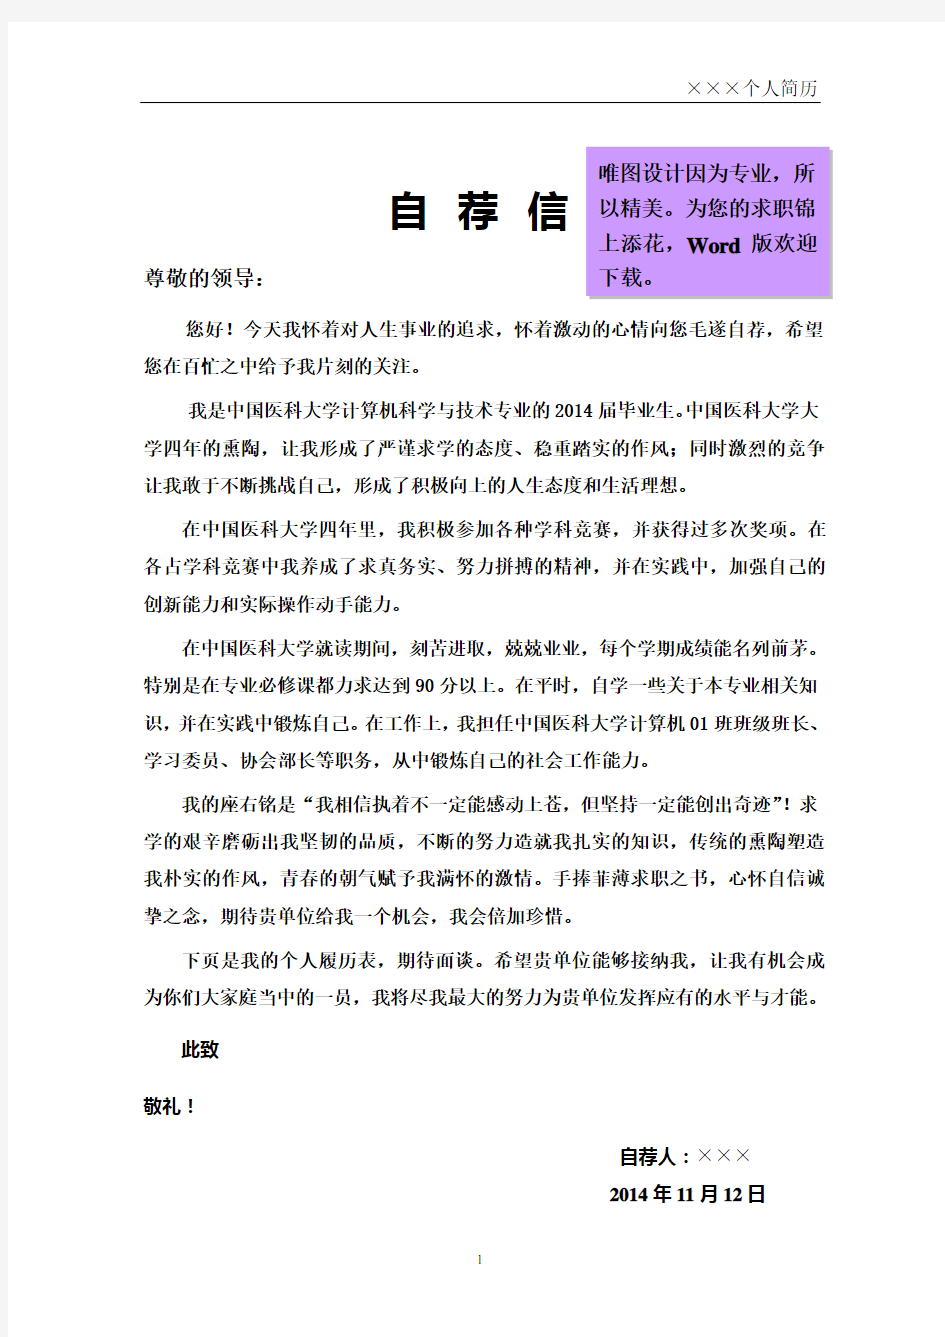 中国医科大学封面个人简历模板